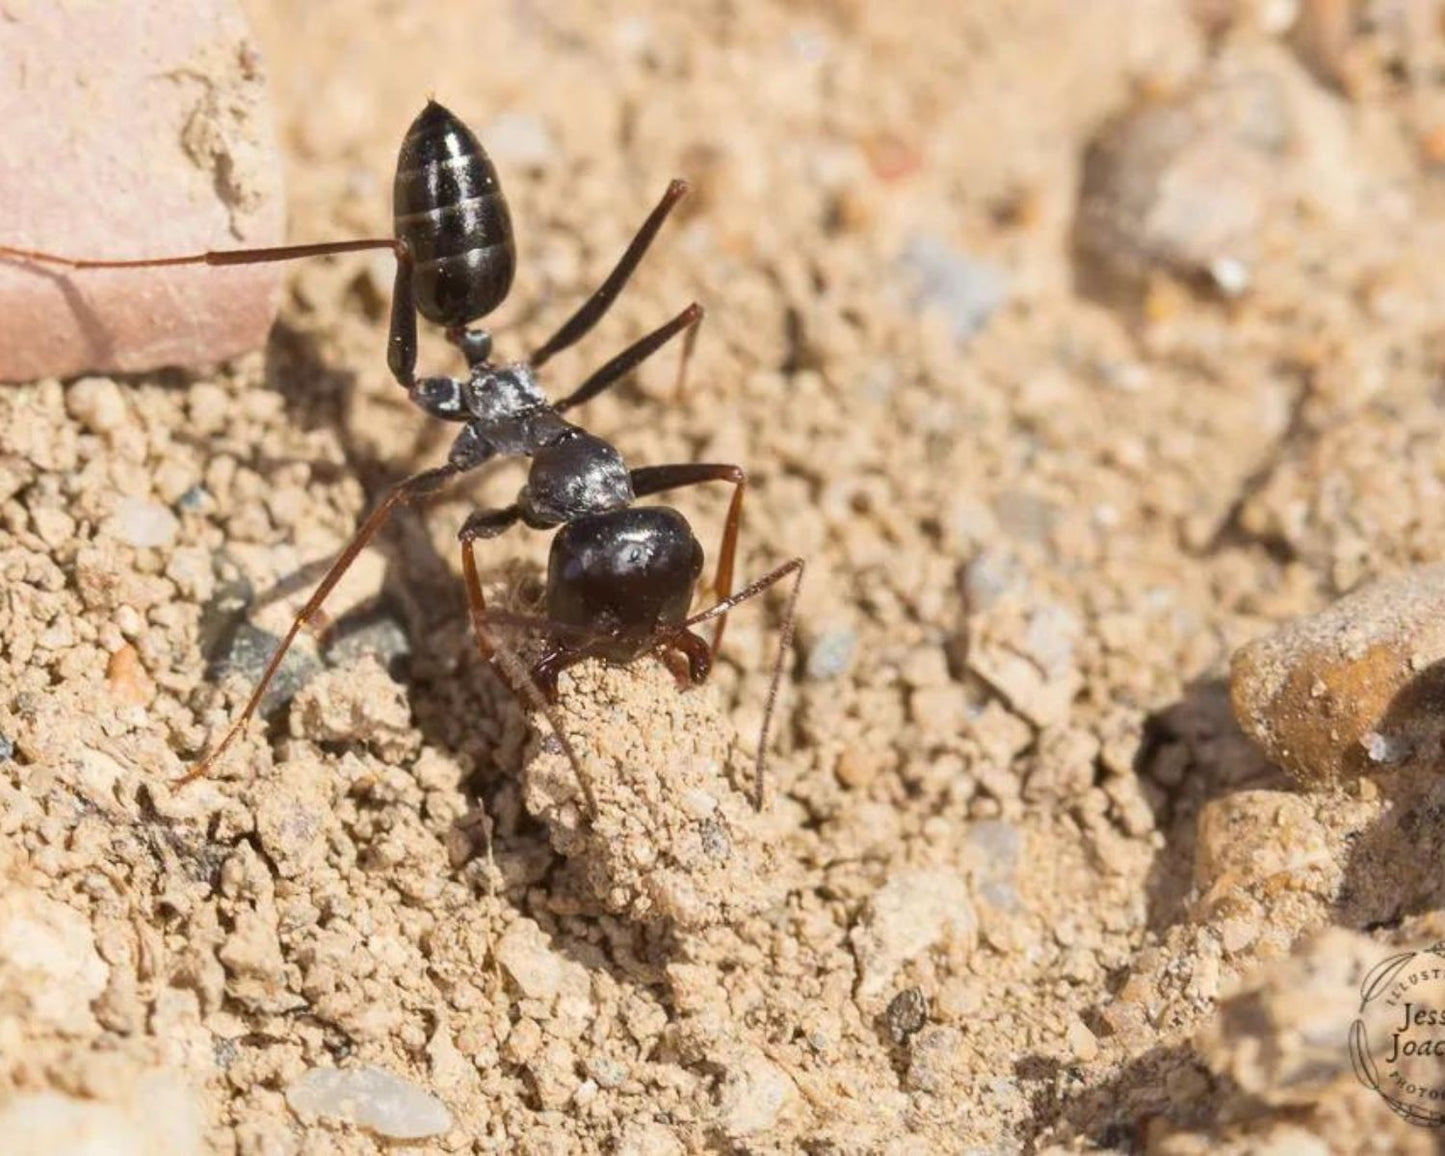 Hormigas - Cataglyphis iberica